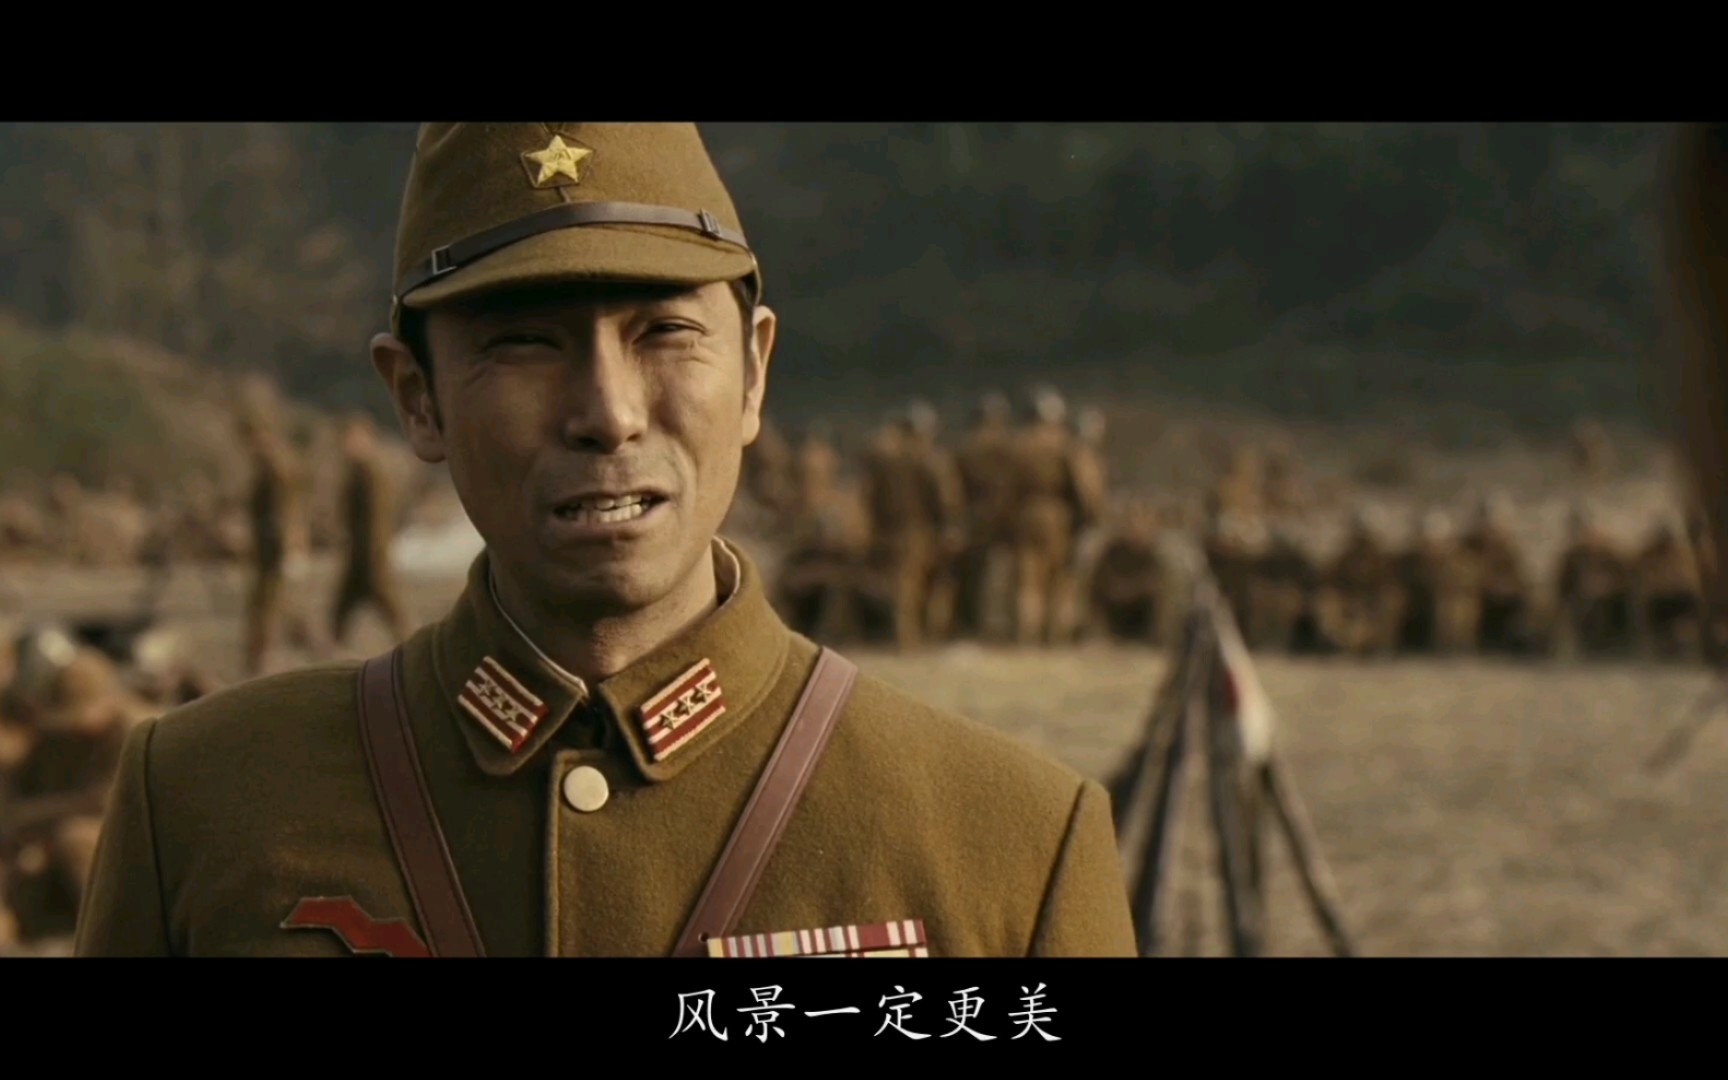 【喋血孤城】一面日军的联队长在对着风景写生,一面日军士兵在抢掠